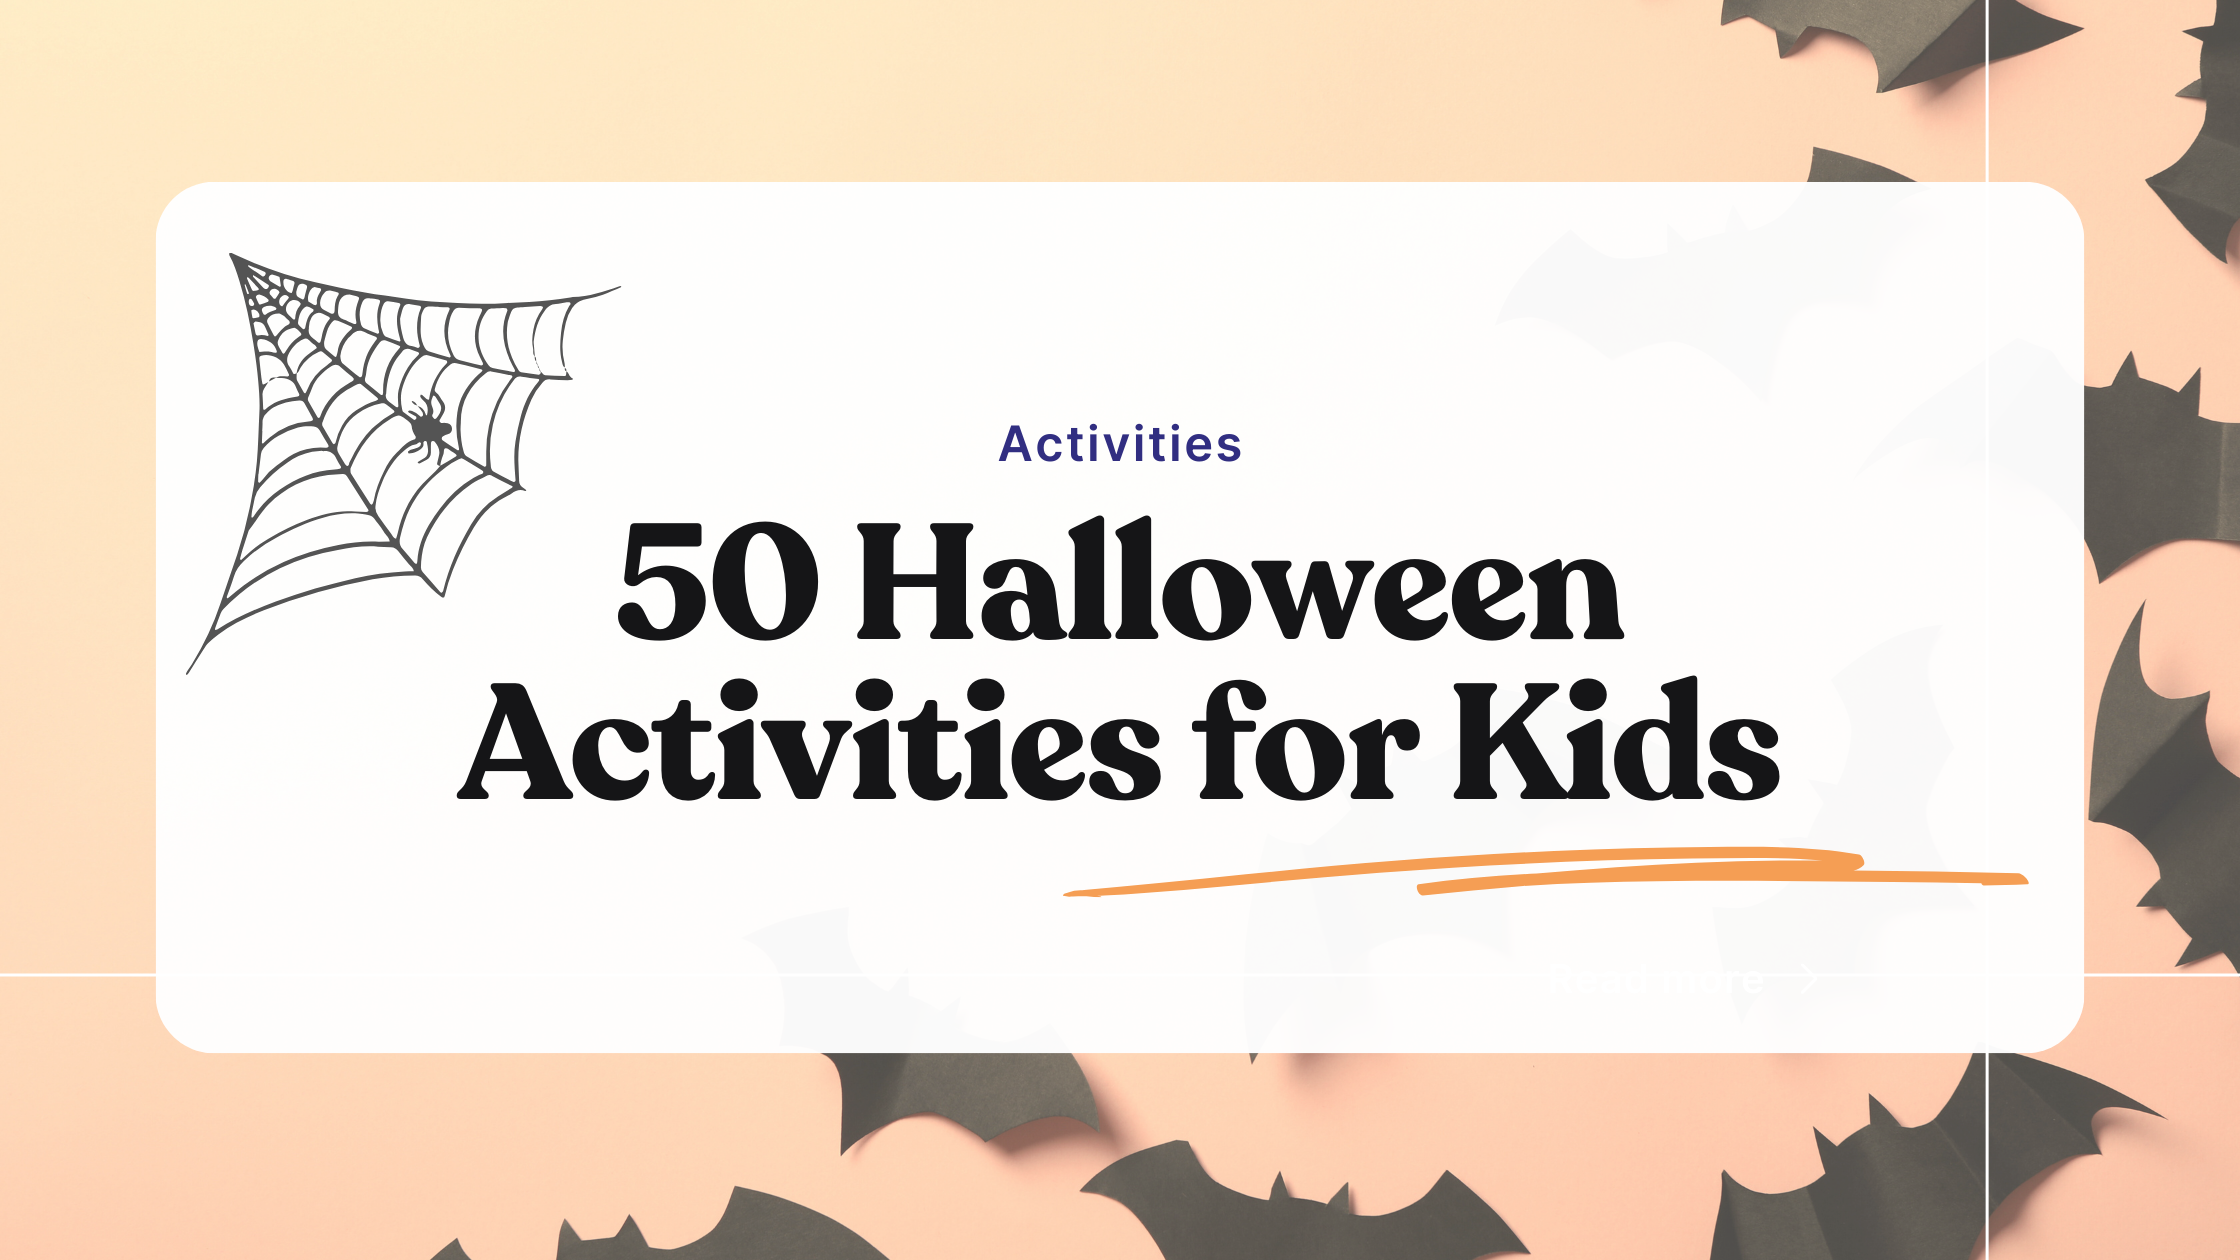 50 Halloween activities for kids